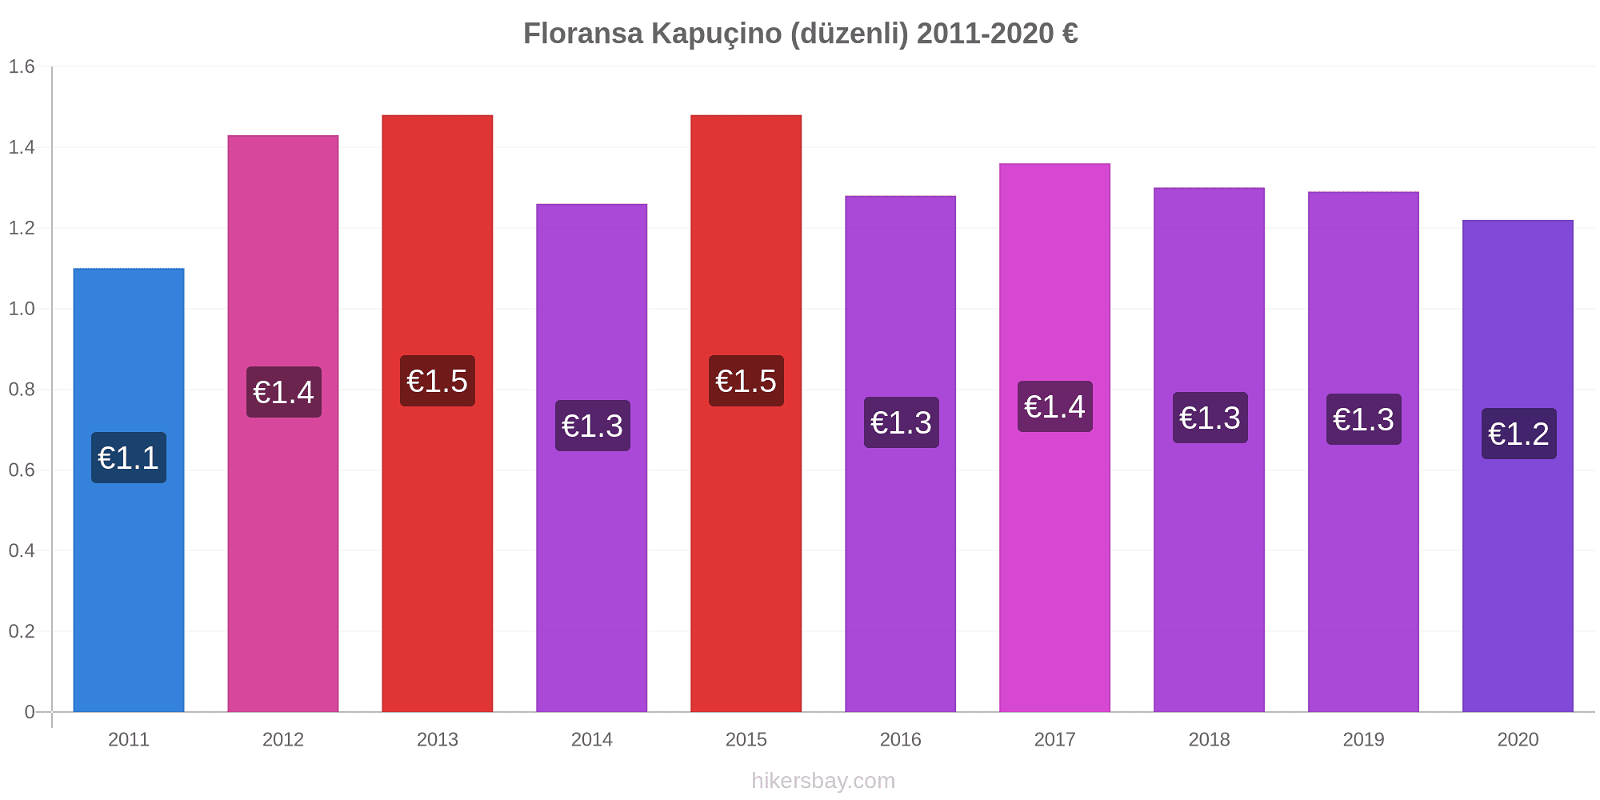 Floransa fiyat değişiklikleri Kapuçino (düzenli) hikersbay.com